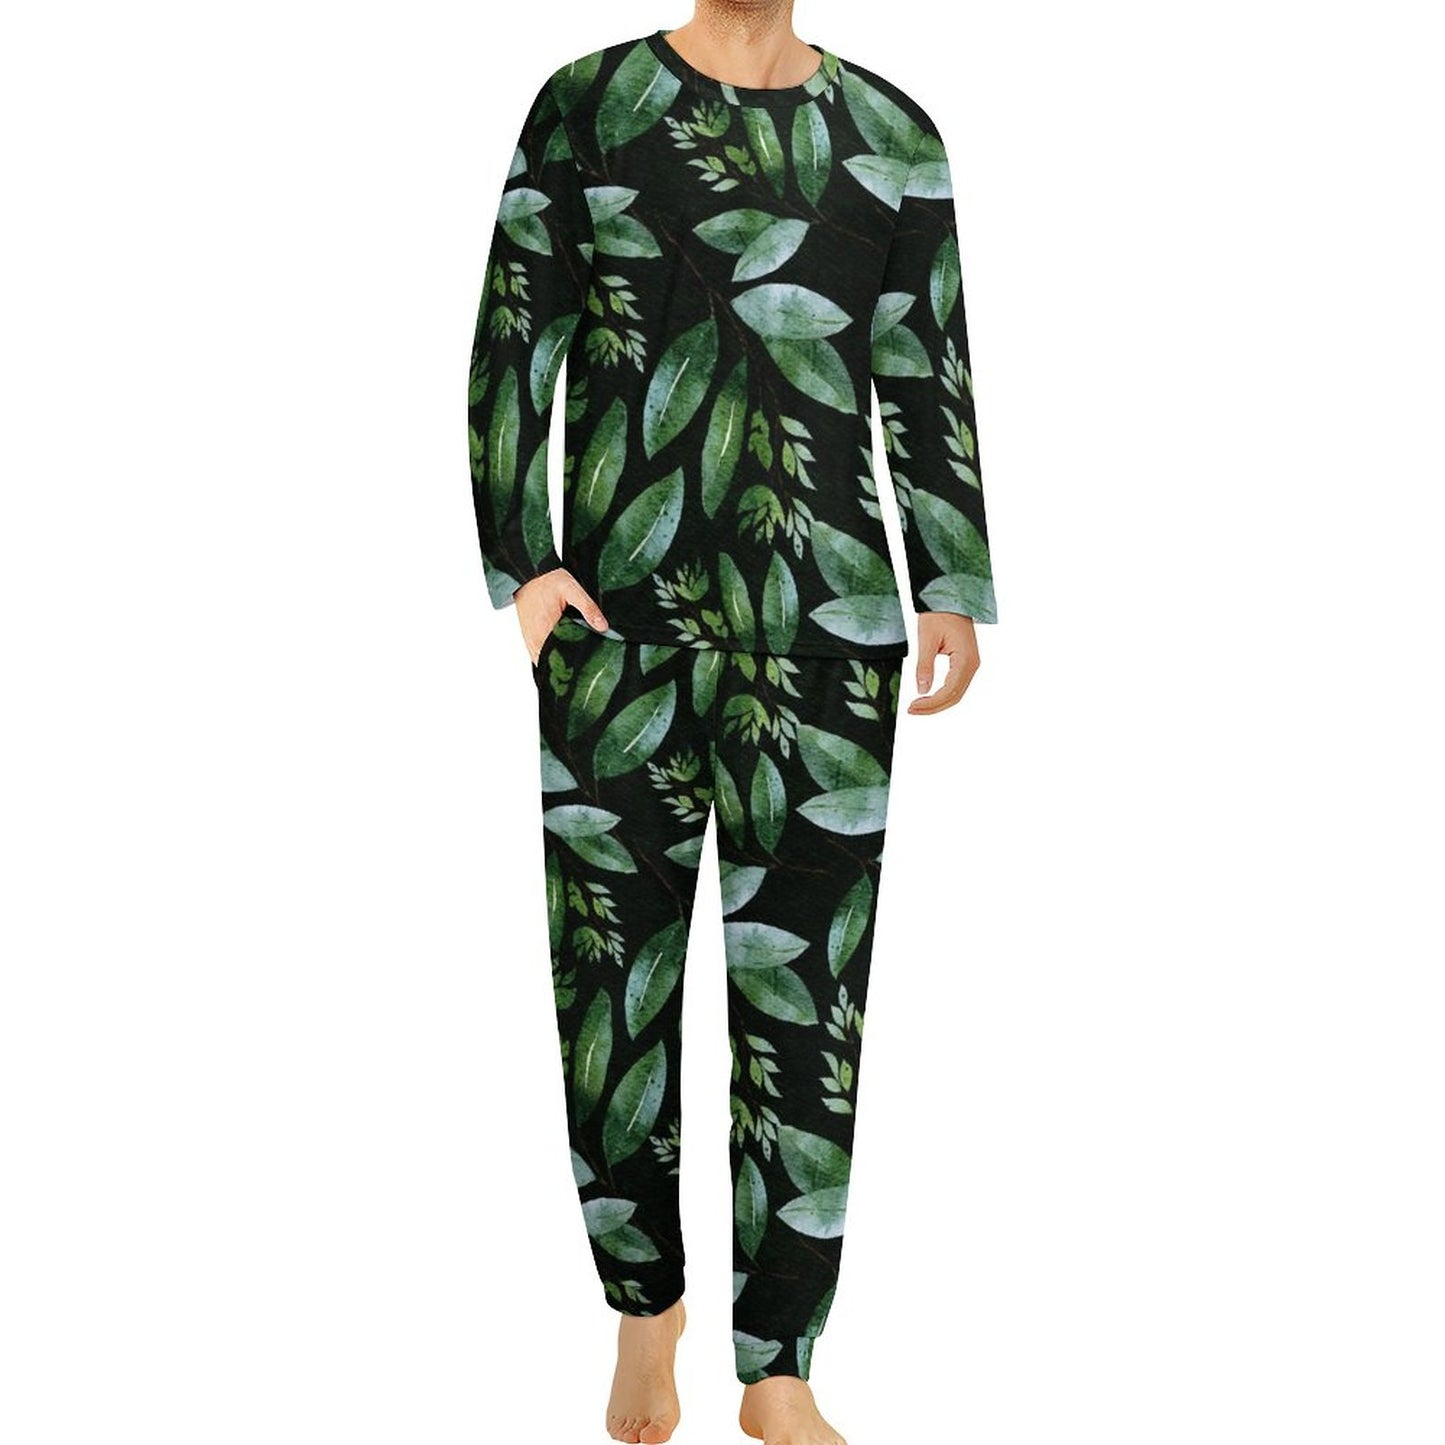 Online DIY Men's Pajama Suit Plant Pattern